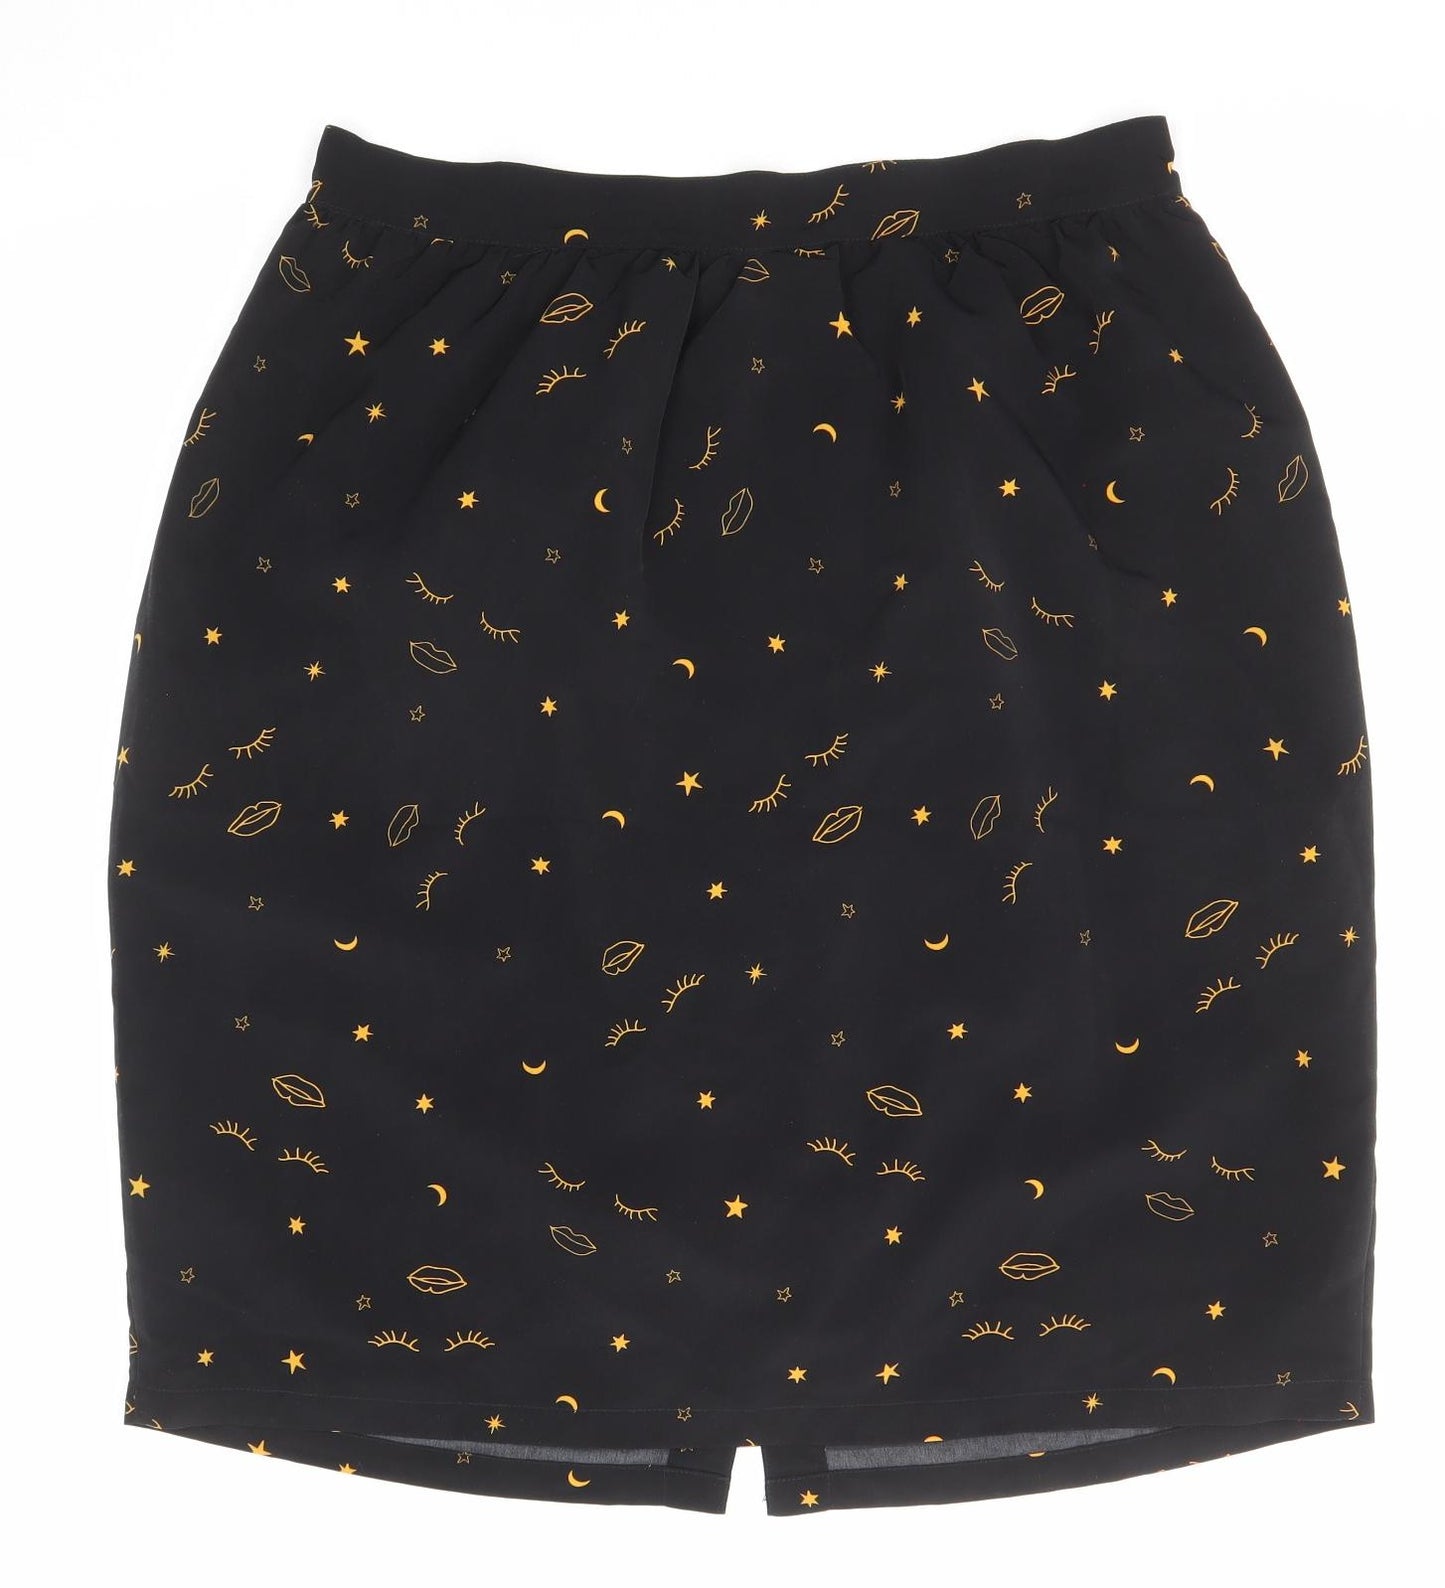 Harkett Womens Black Geometric Polyester A-Line Skirt Size 16 Button - Star moon face pattern